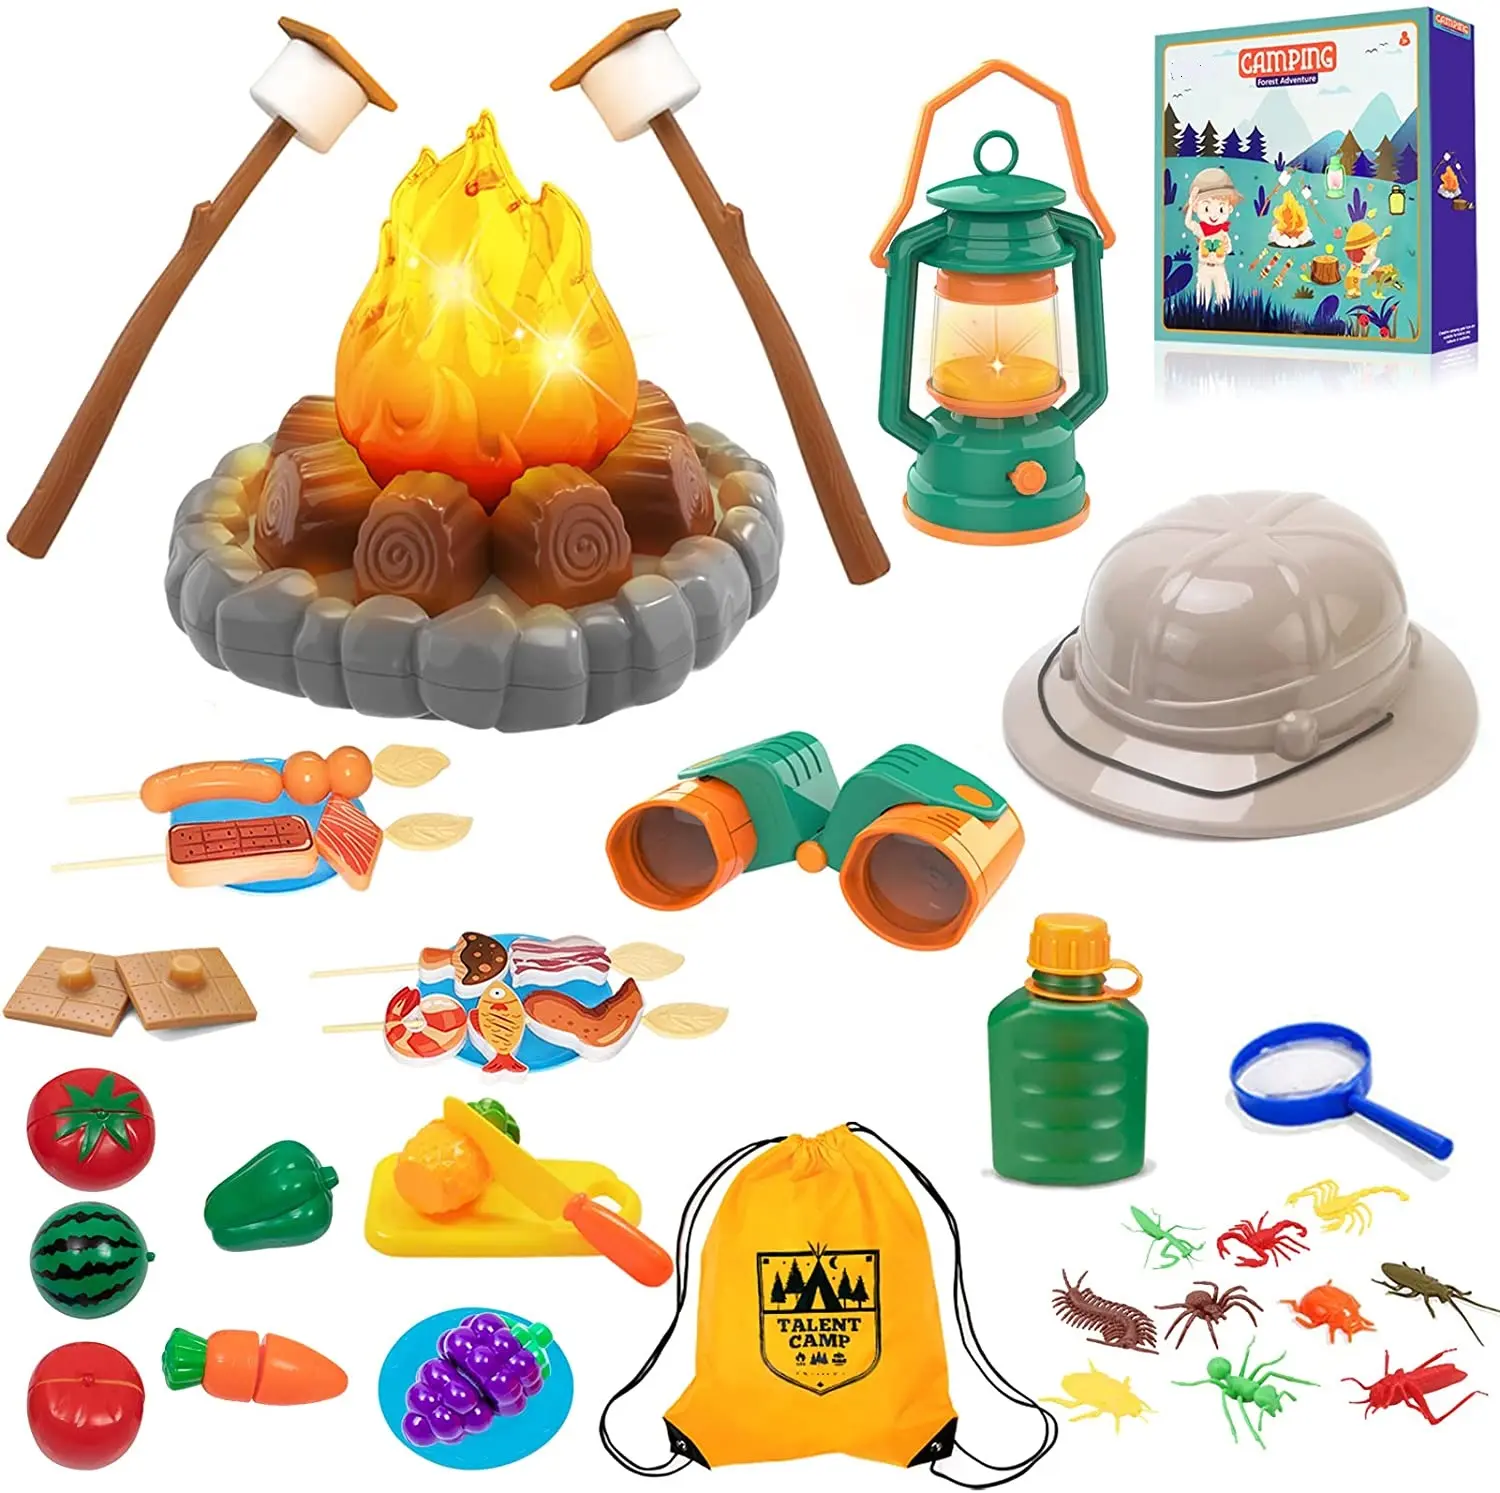 Conjunto de brinquedos para acampamento, conjunto de brinquedos ao ar livre e dentro de casa para crianças fingir jogar simular as atividades reais de acampamento